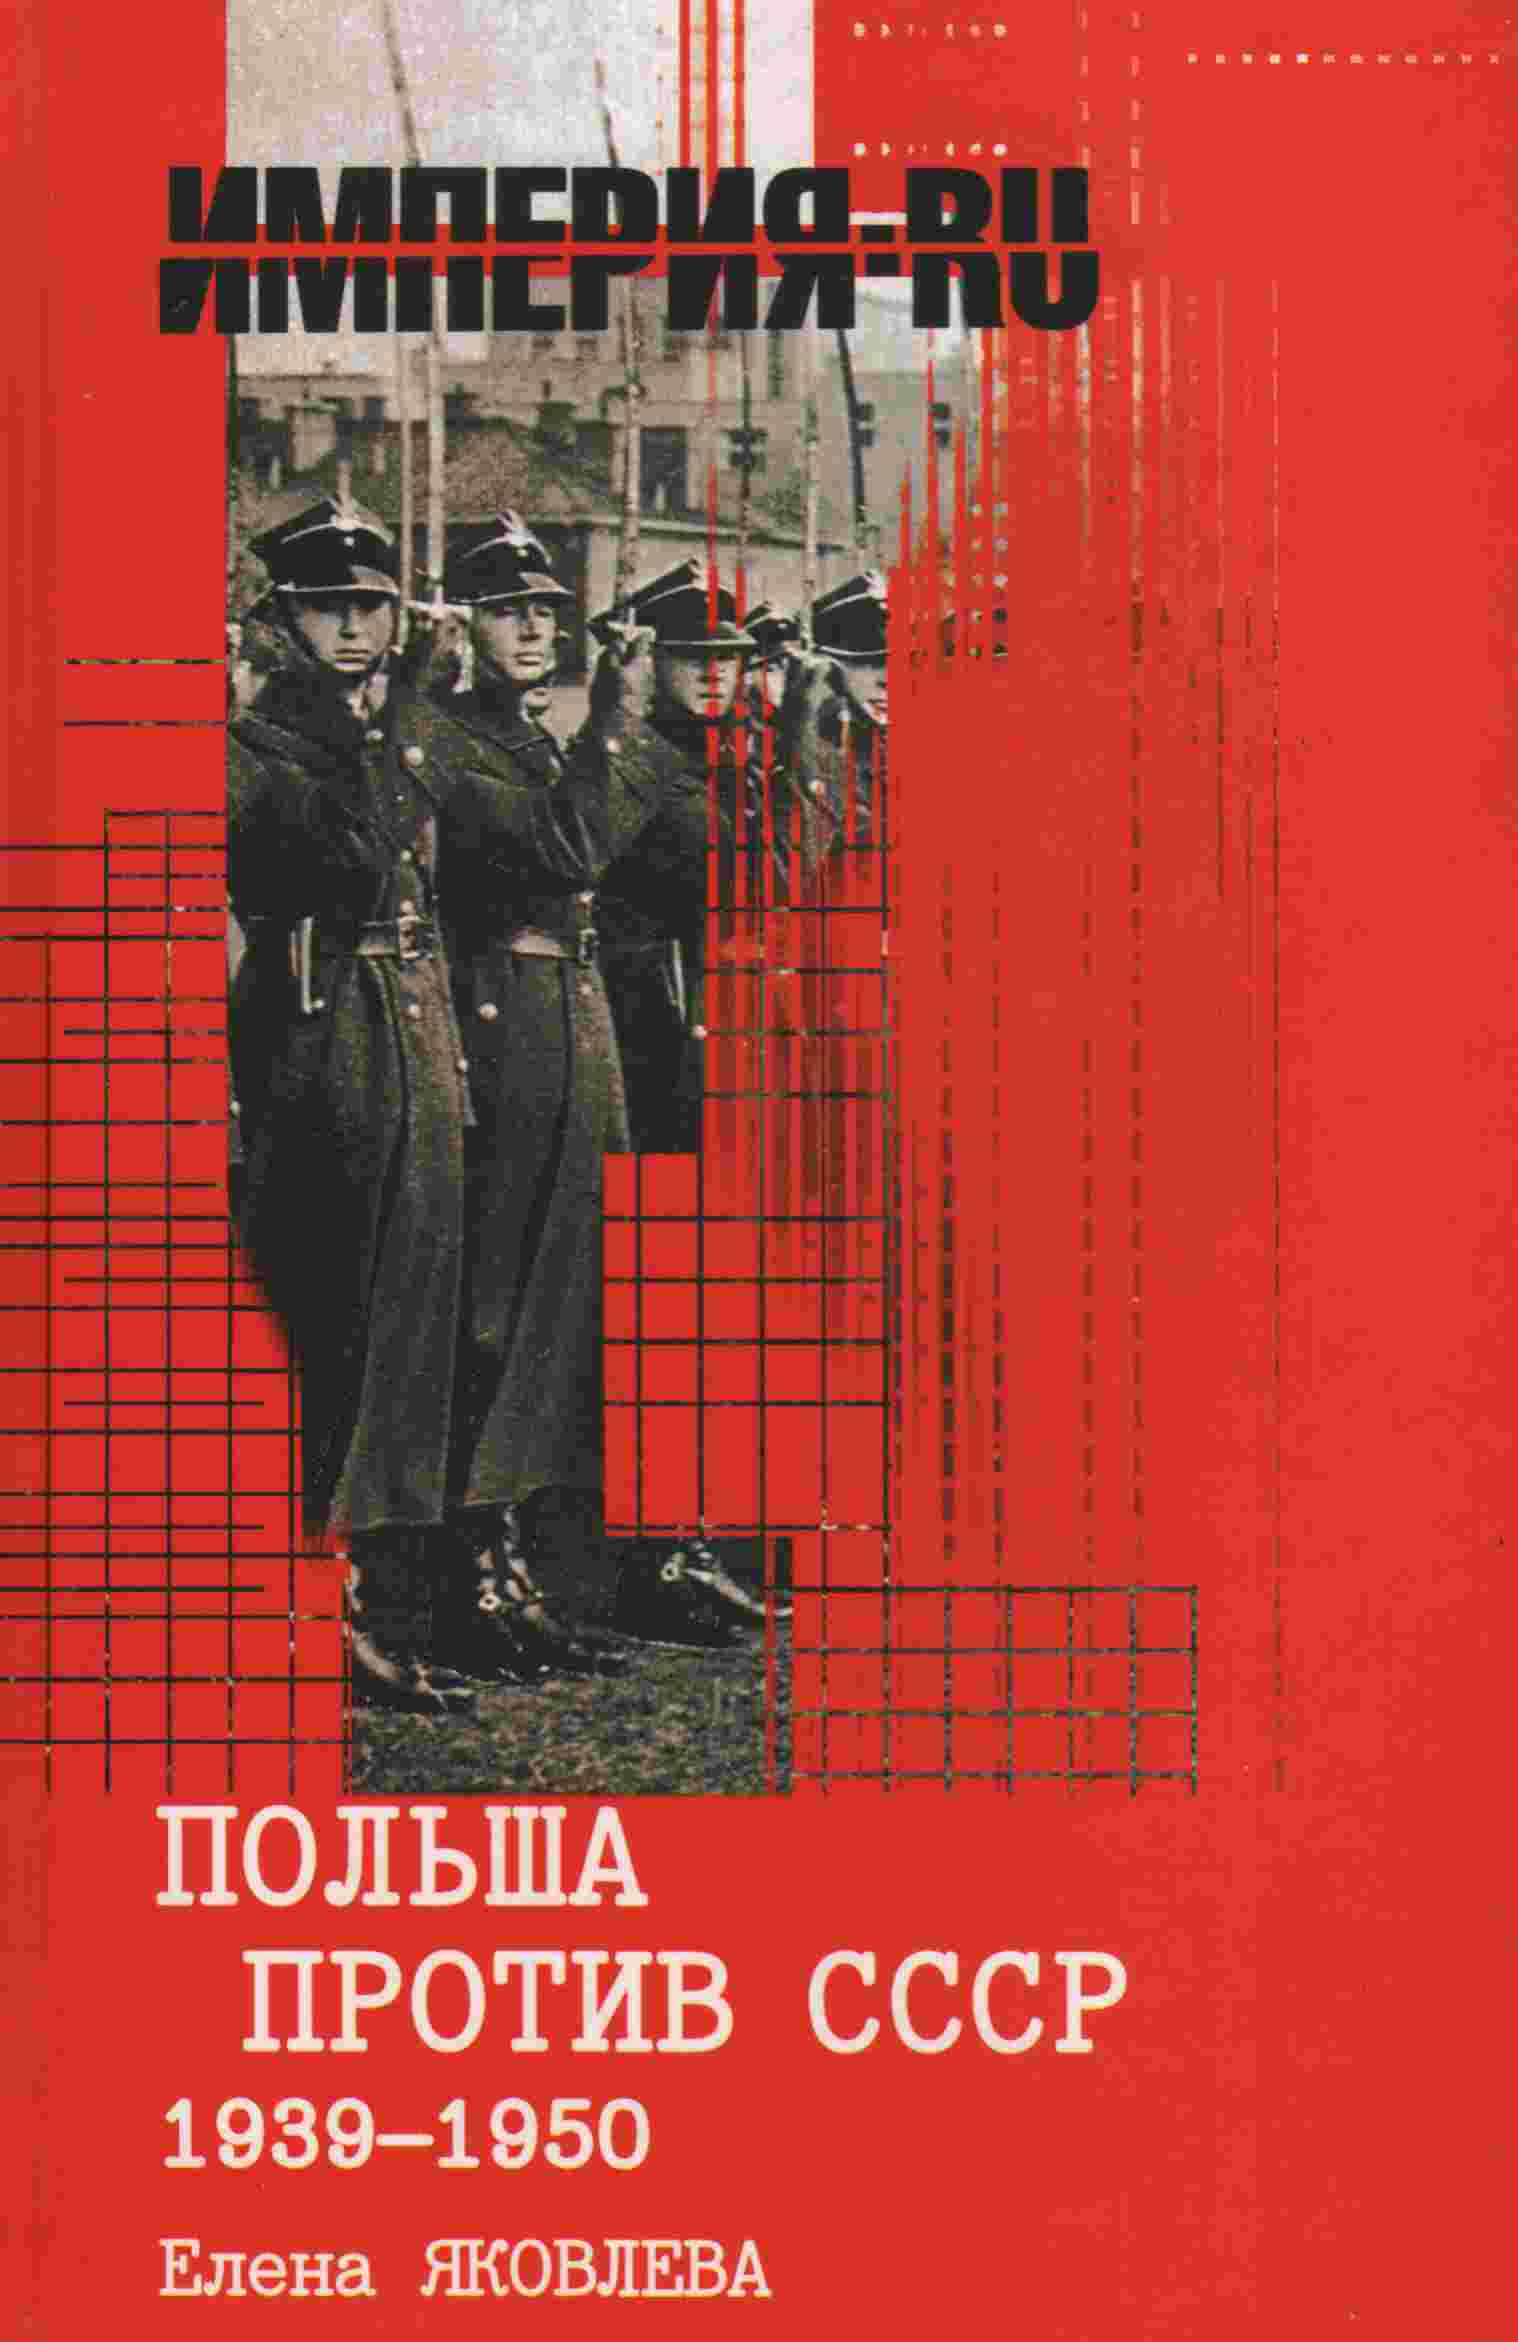 Яковлева Елена - Польша против СССР 1939-1950 гг. скачать бесплатно